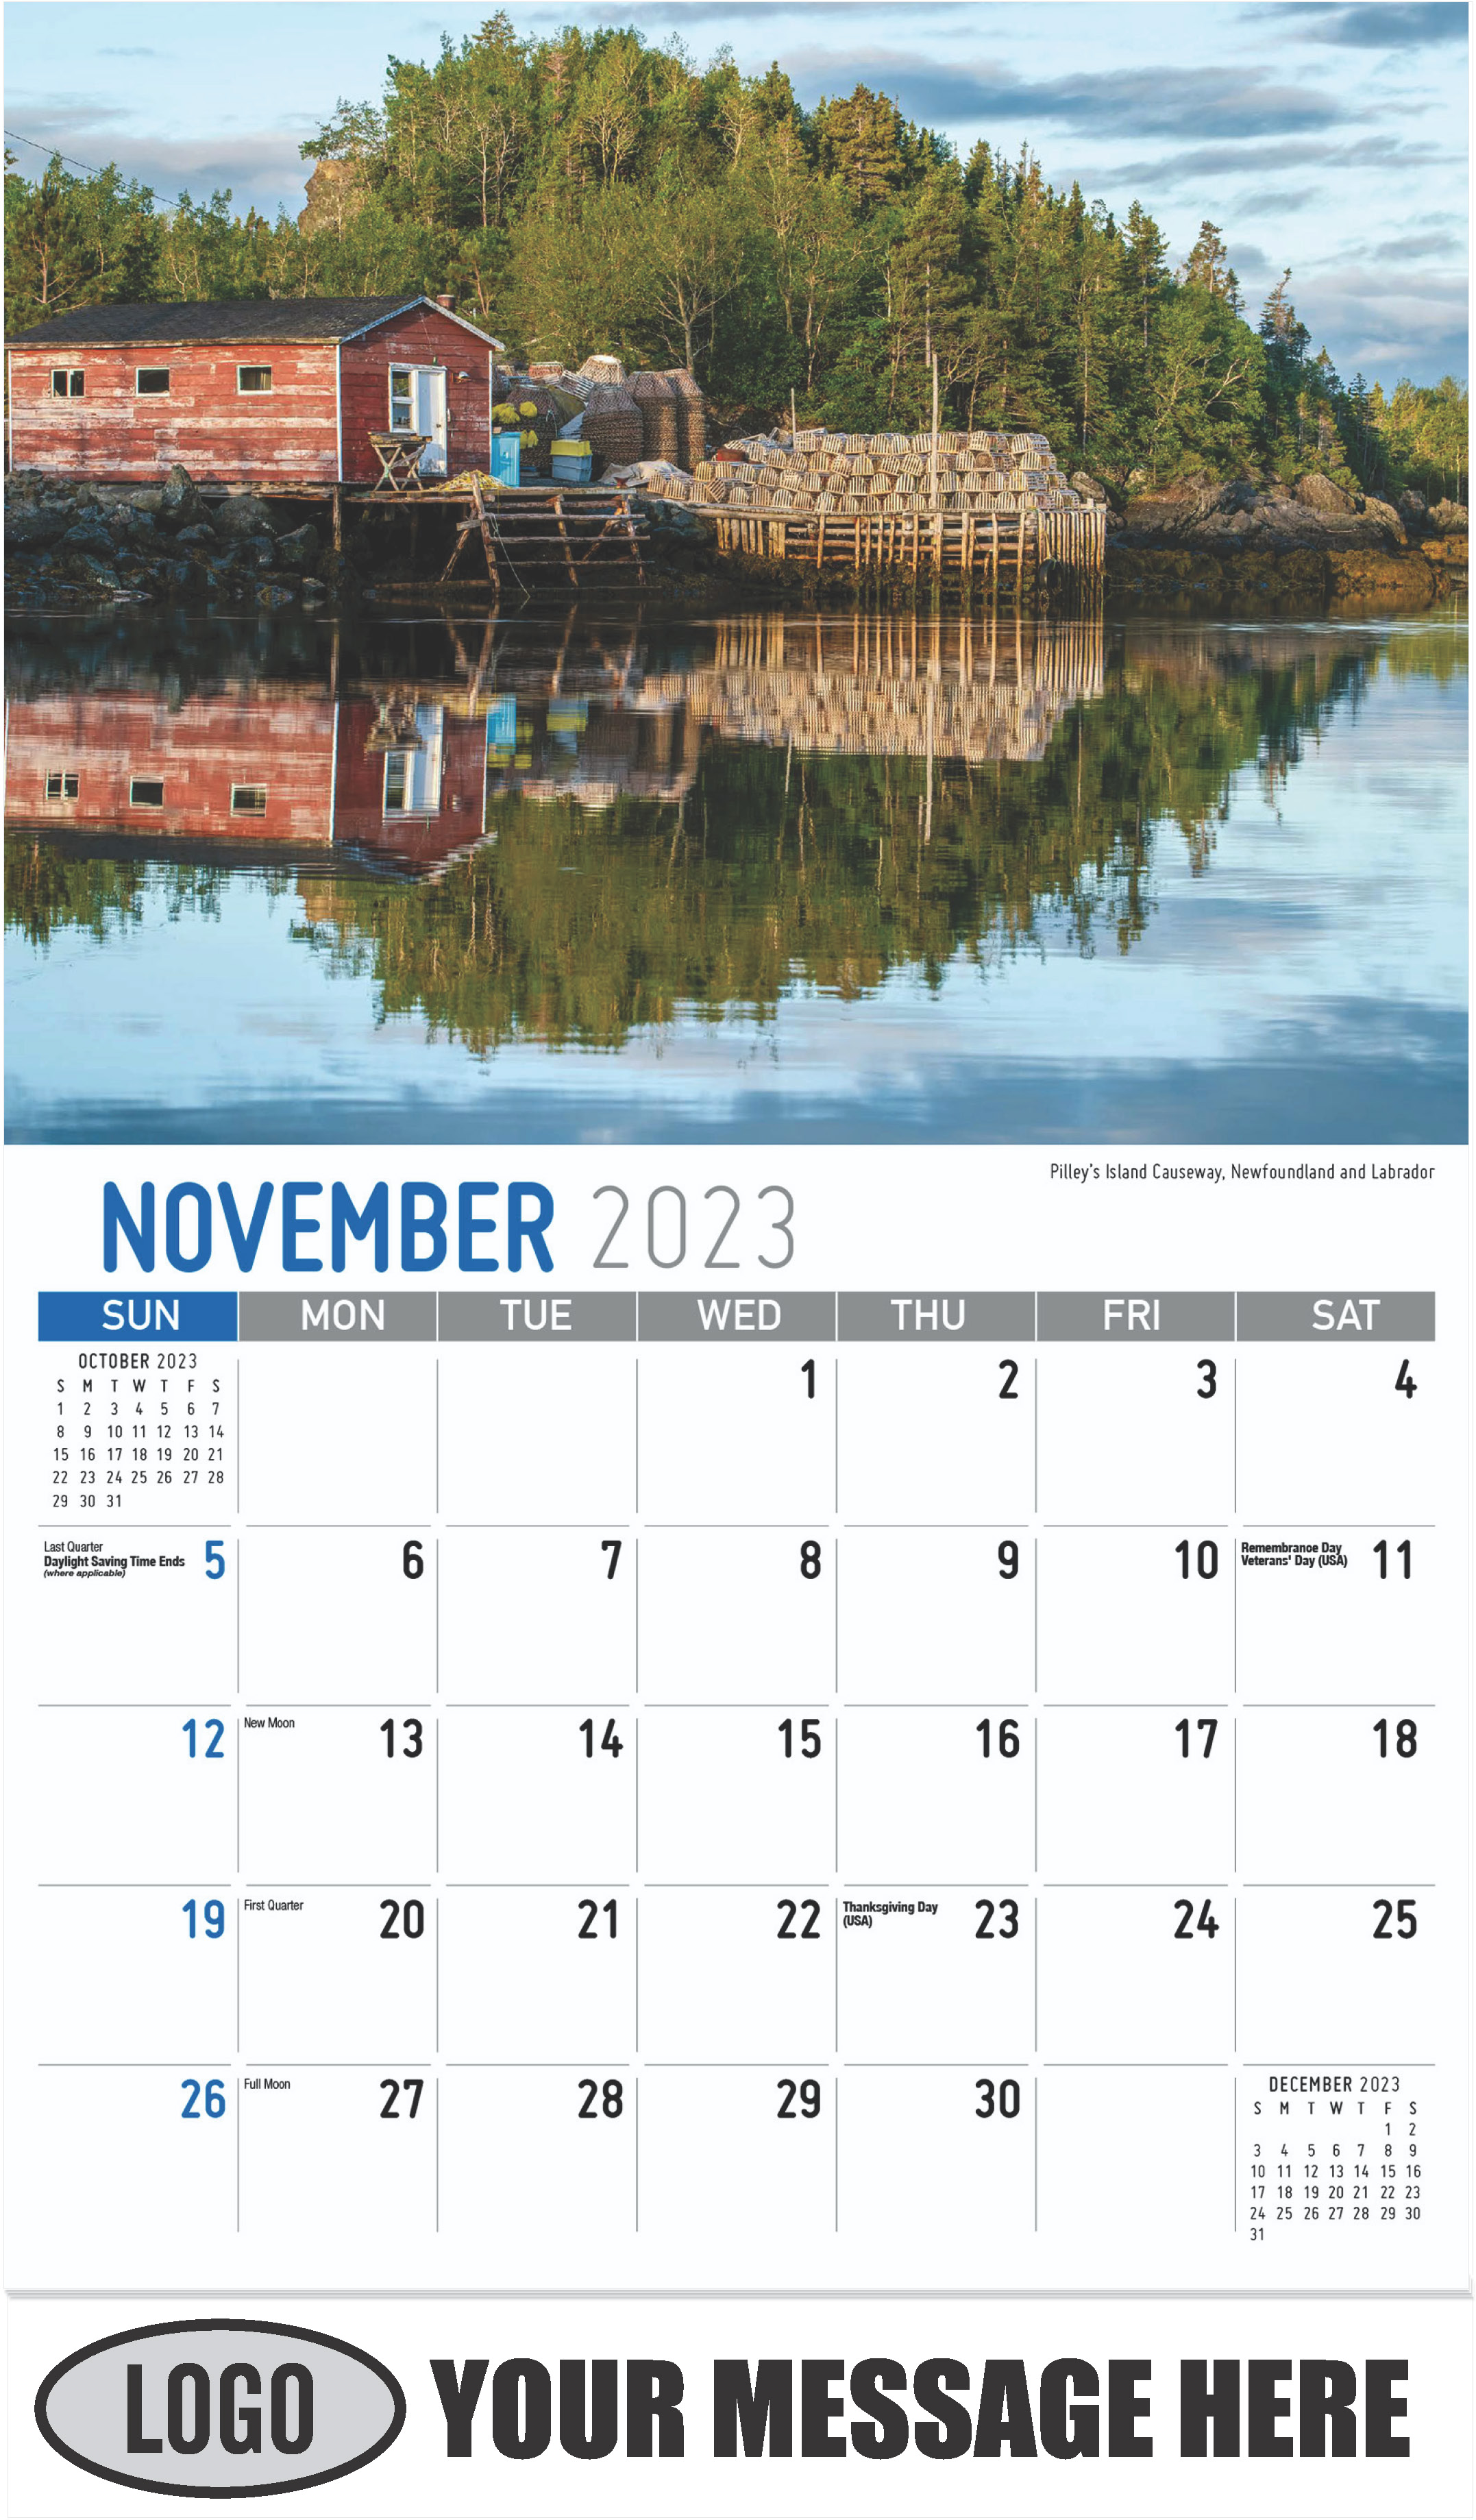 Pilley’s Island causeway, Newfoundland and Labrador - November - Atlantic Canada 2023 Promotional Calendar